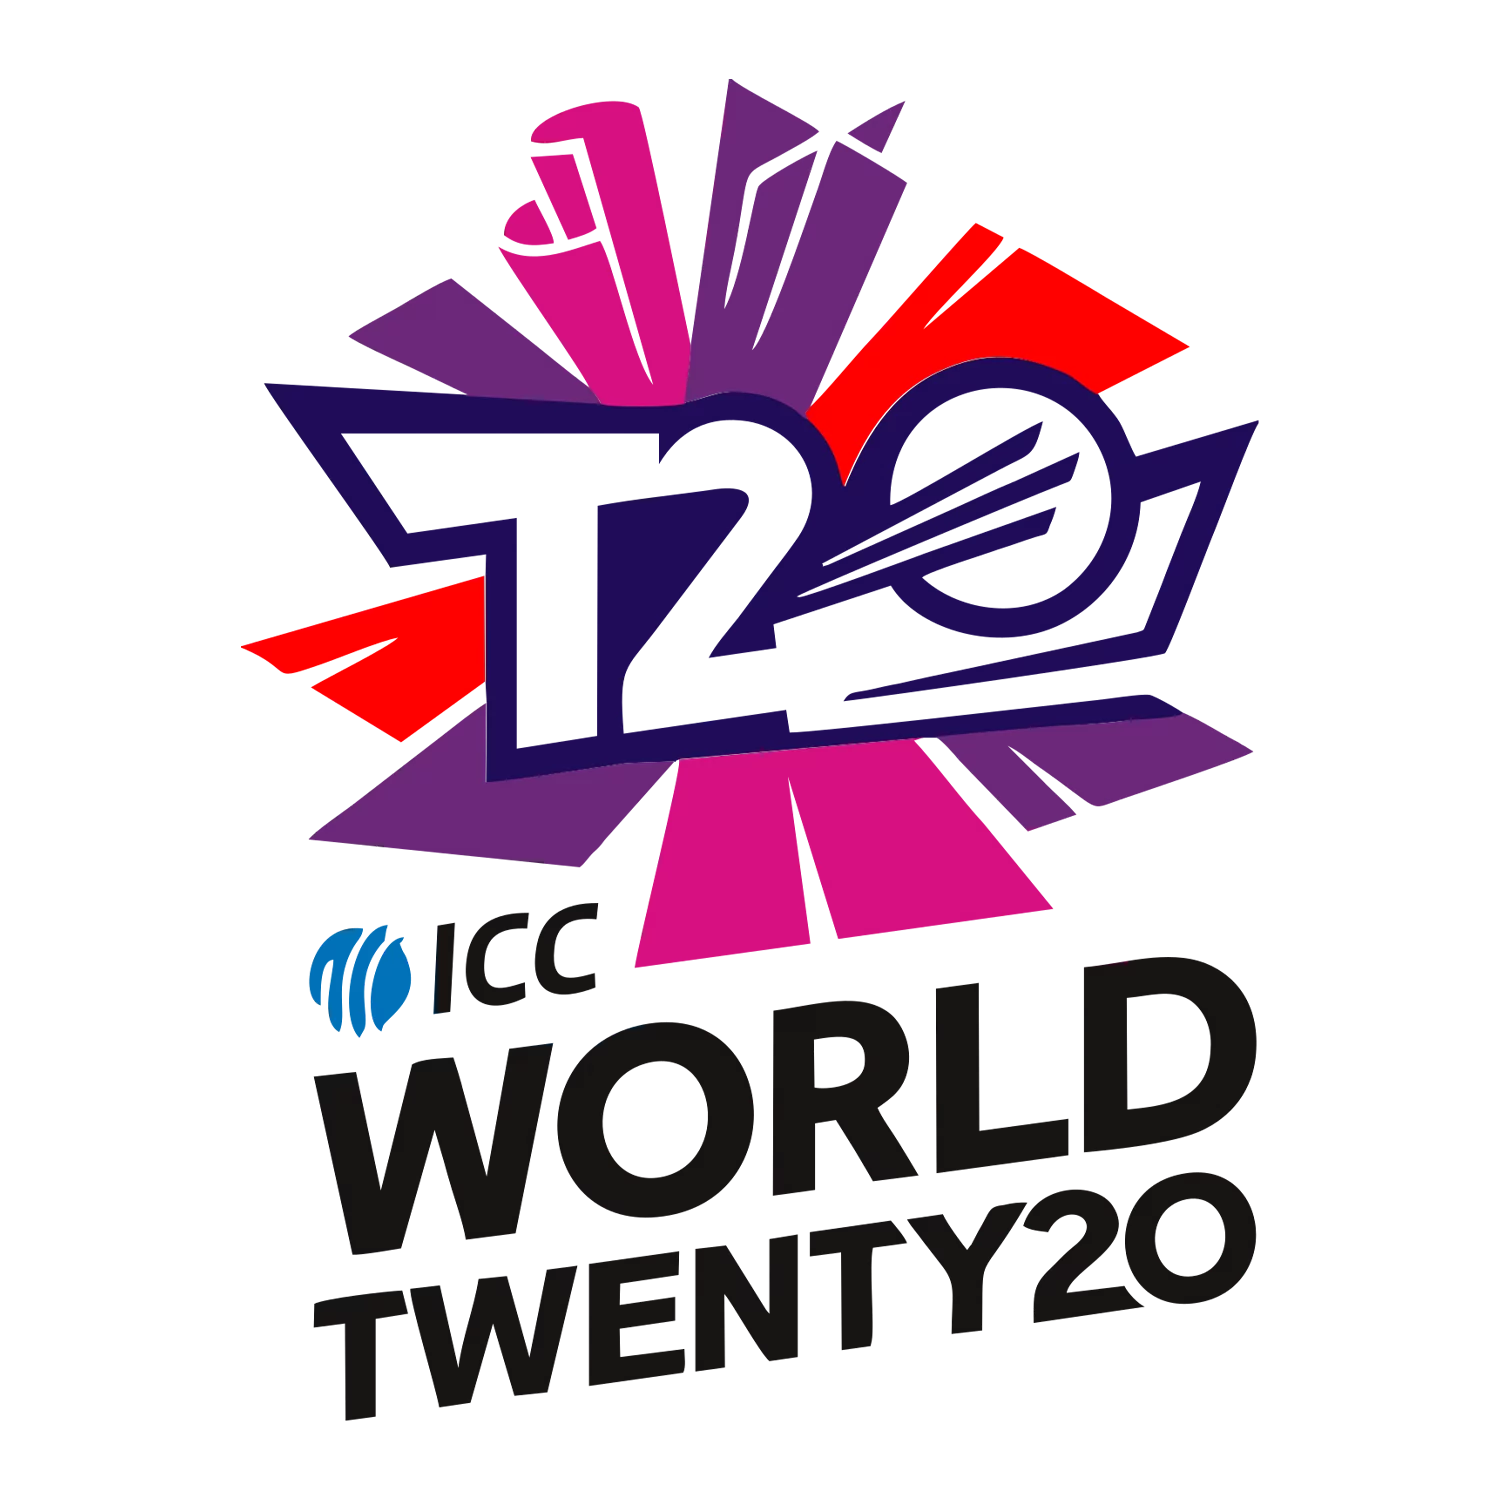 इस लेख से, आप टी20 विश्व कप की संरचना, नियम और टीमों को सीखते हैं।